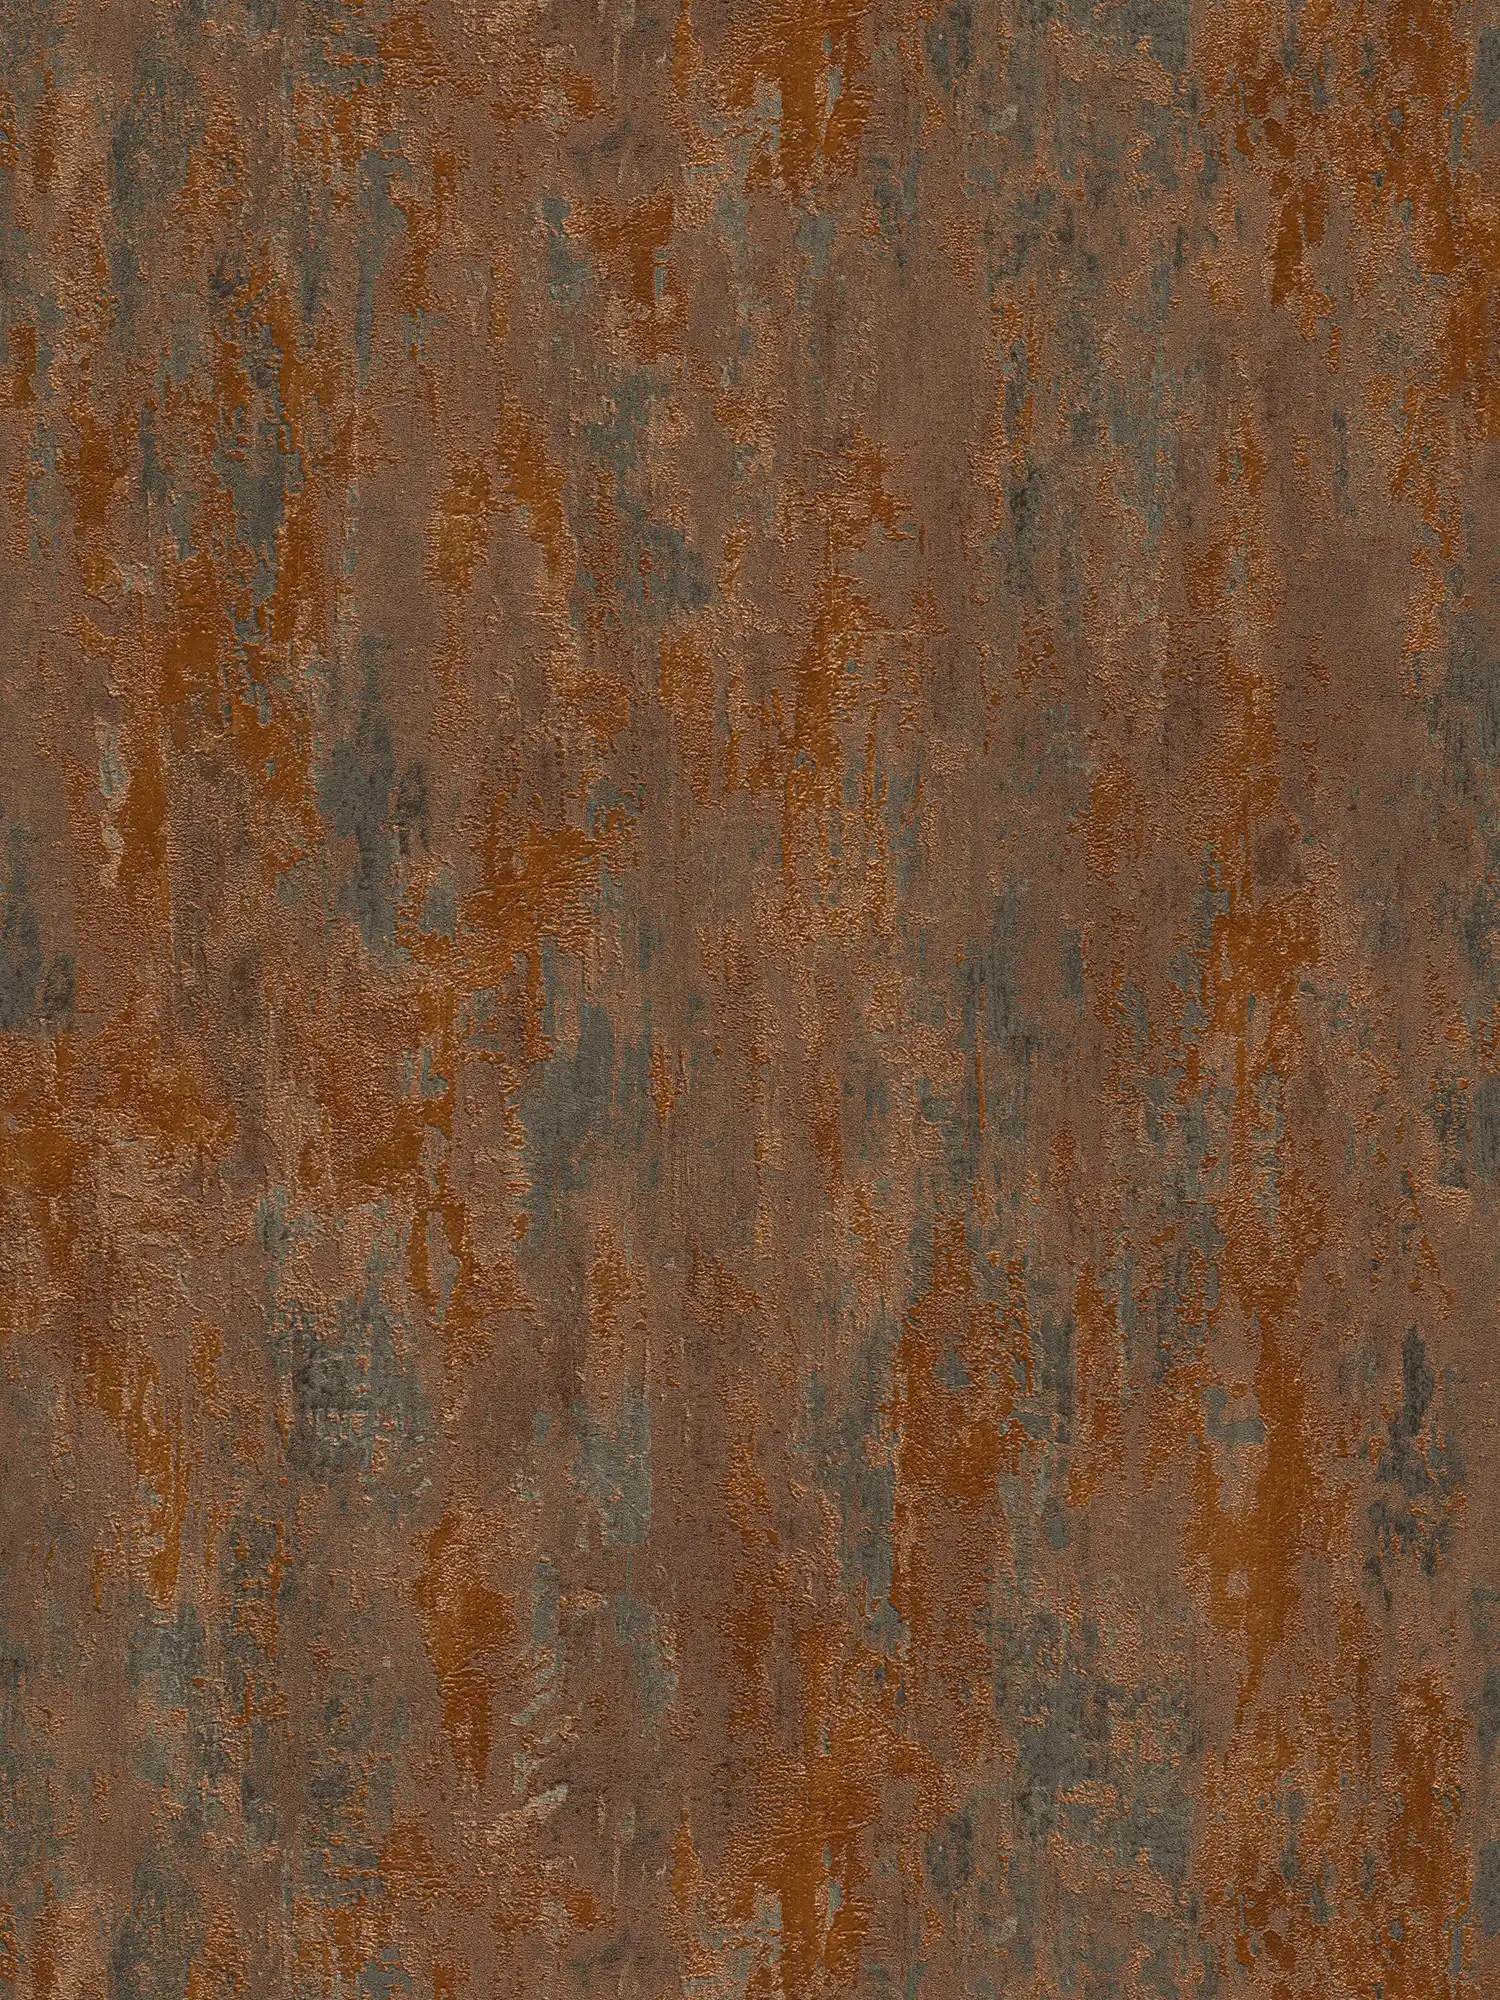         Tapete Rost & Metallic-Effekt im Industrial Stil – Orange, Kupfer, Braun
    